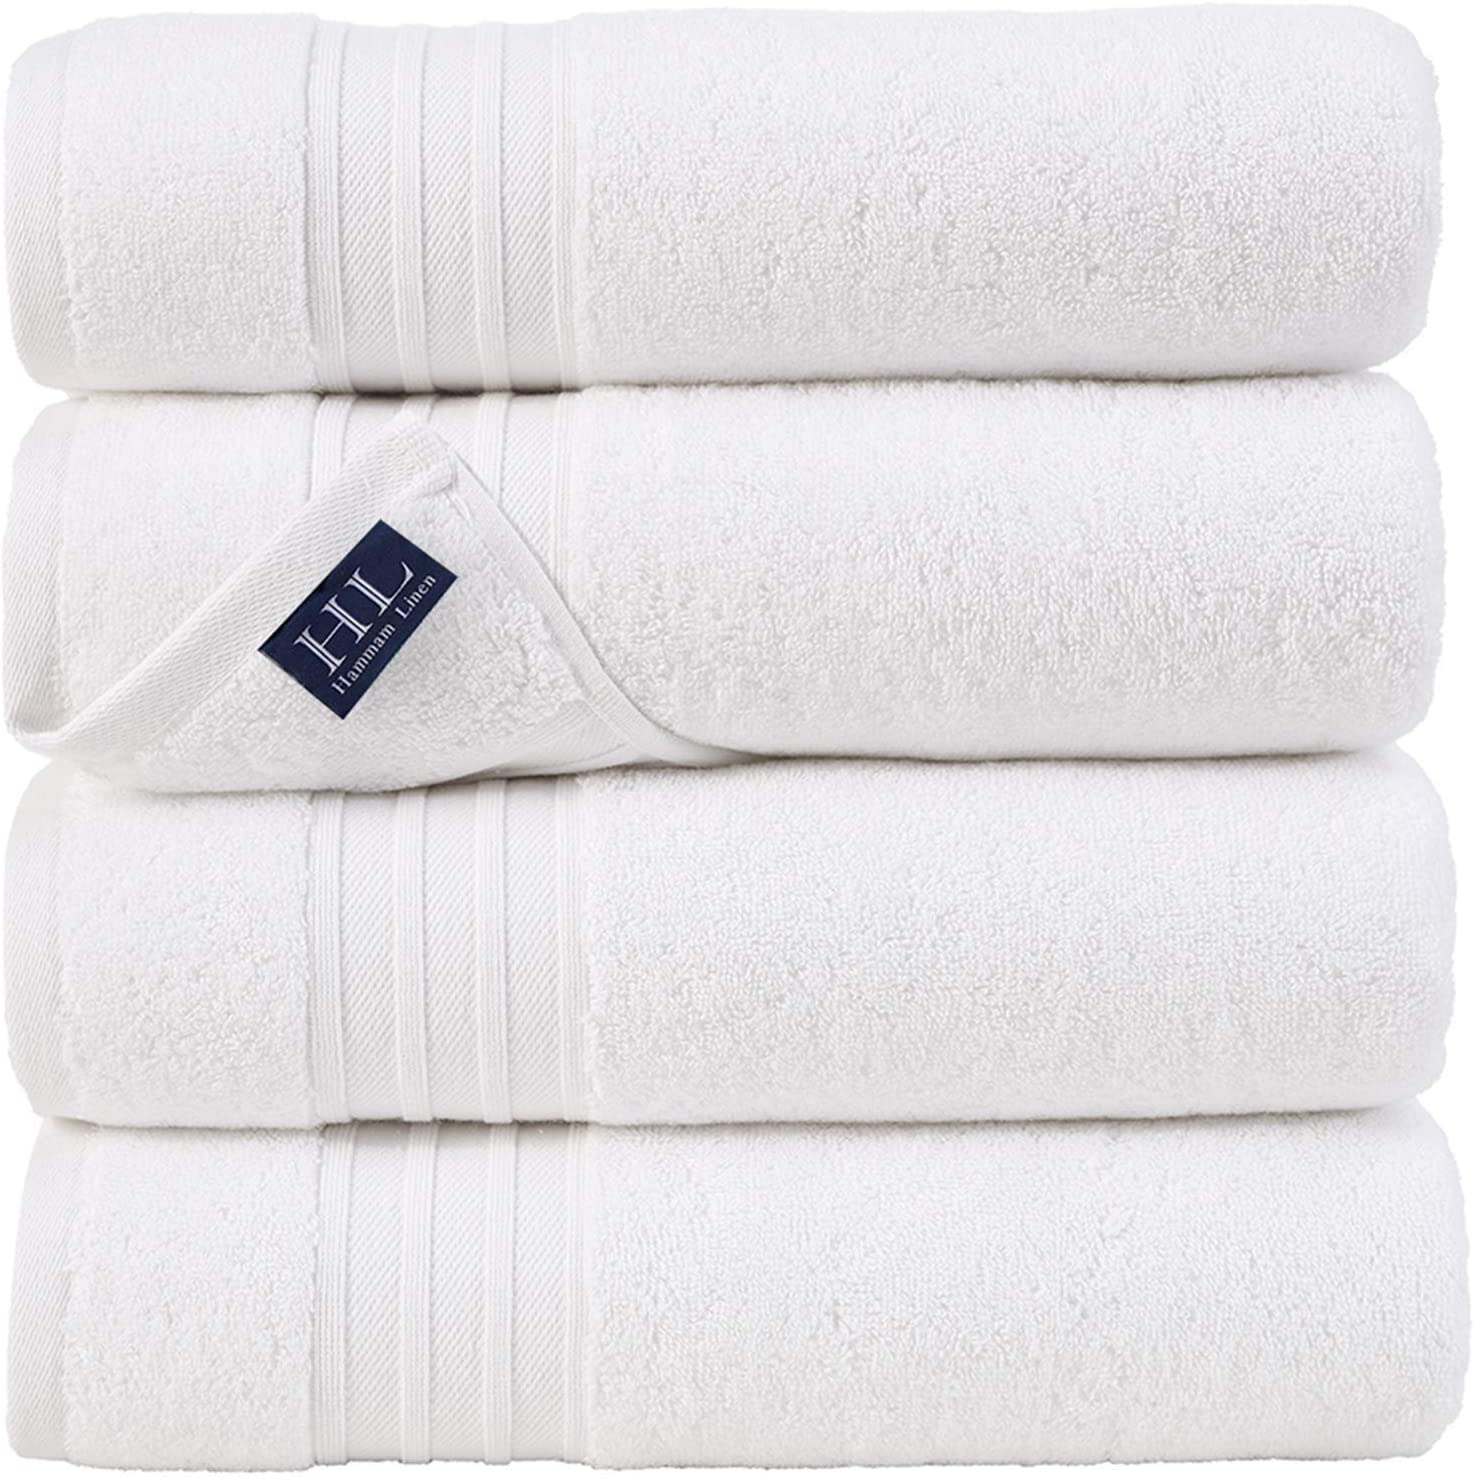 Hammam Linen Lightweight Cotton Bath Towels, 4-Piece